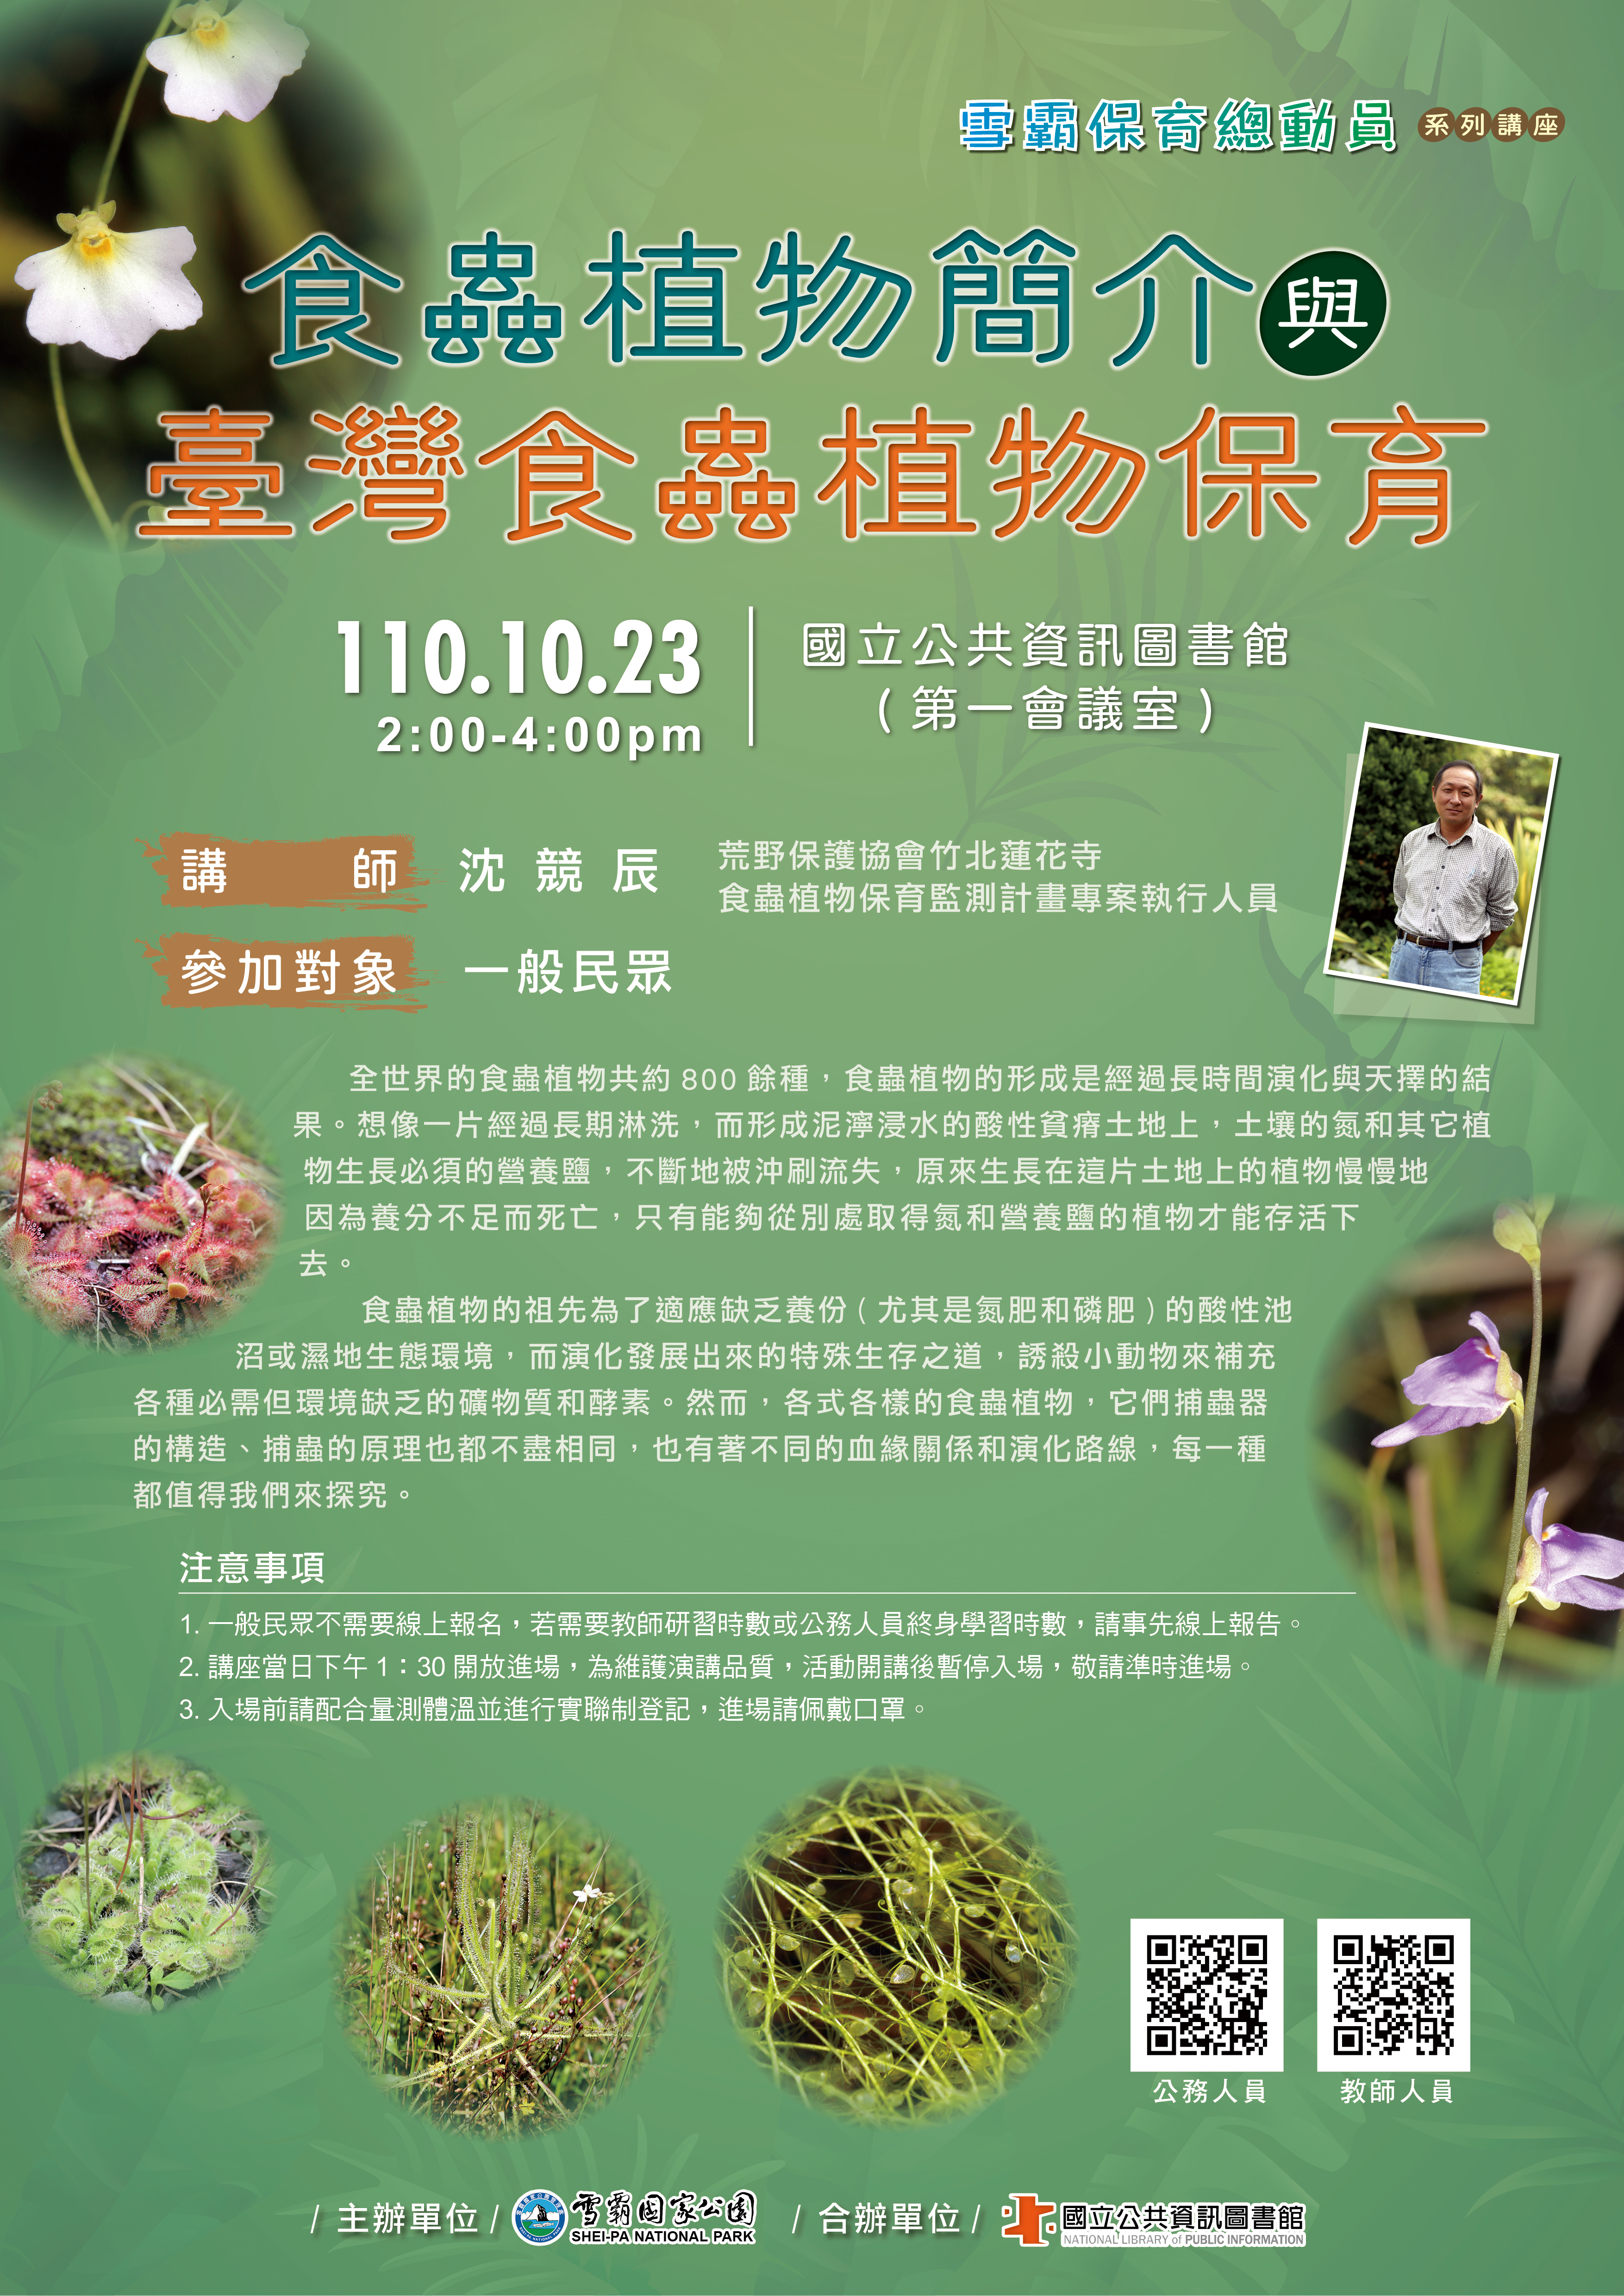 食蟲植物簡介與臺灣食蟲植物保育